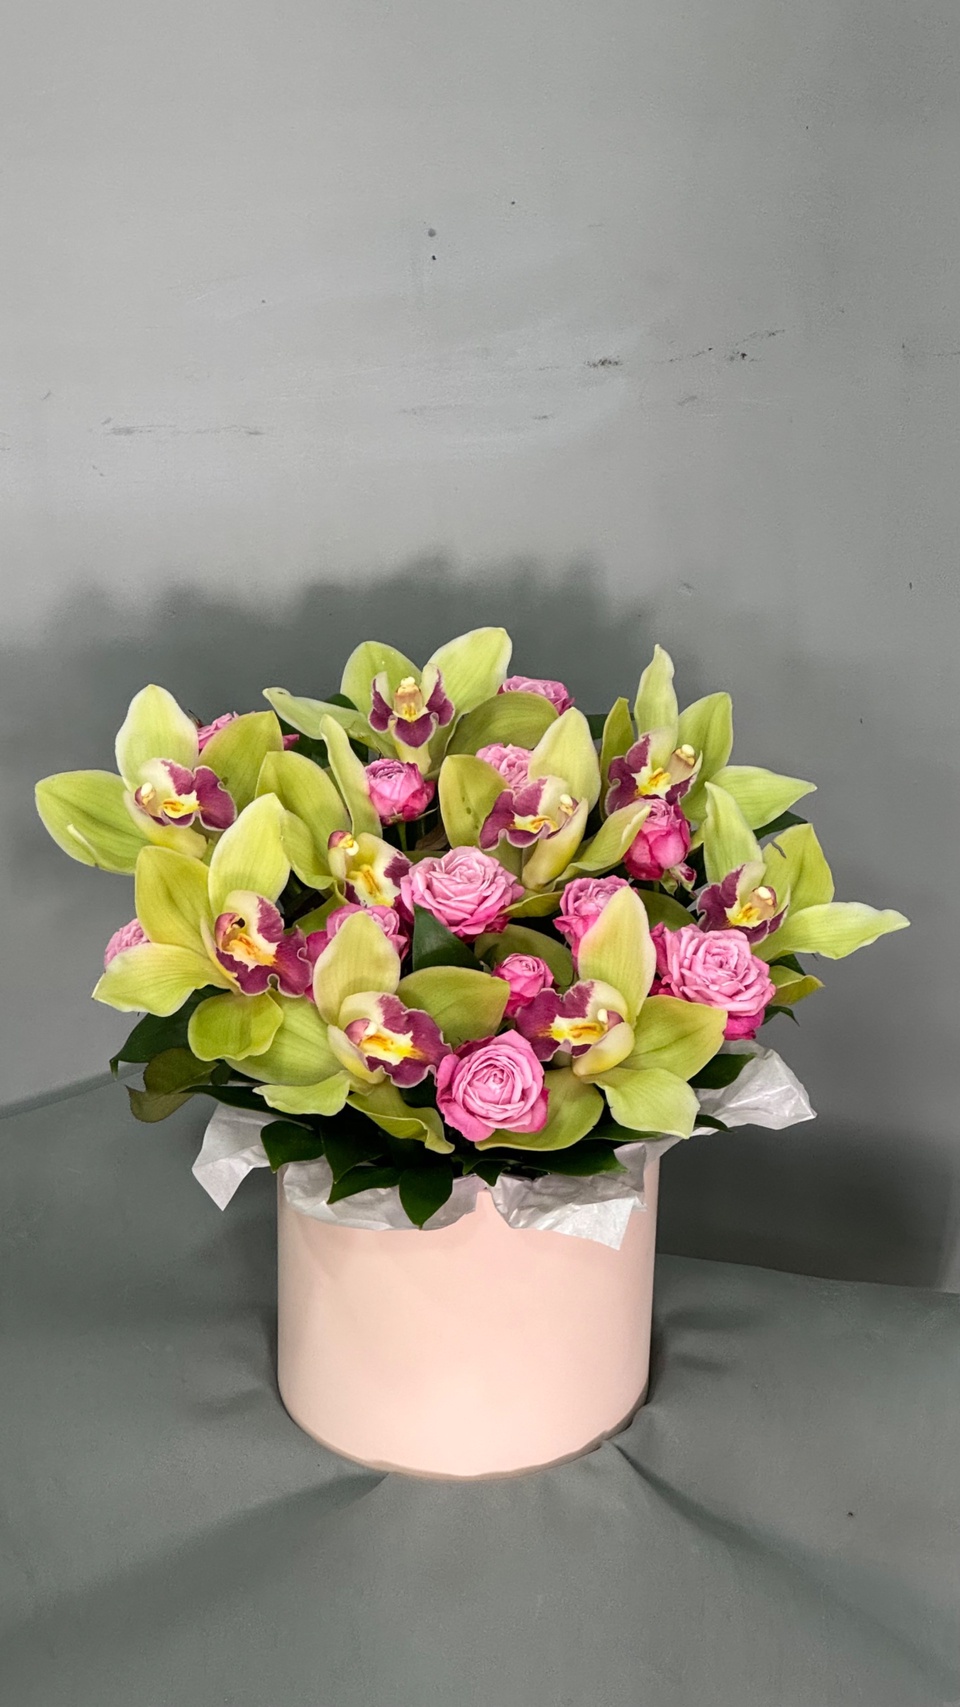 Орхидейка - 2 700 ₽, заказать онлайн.